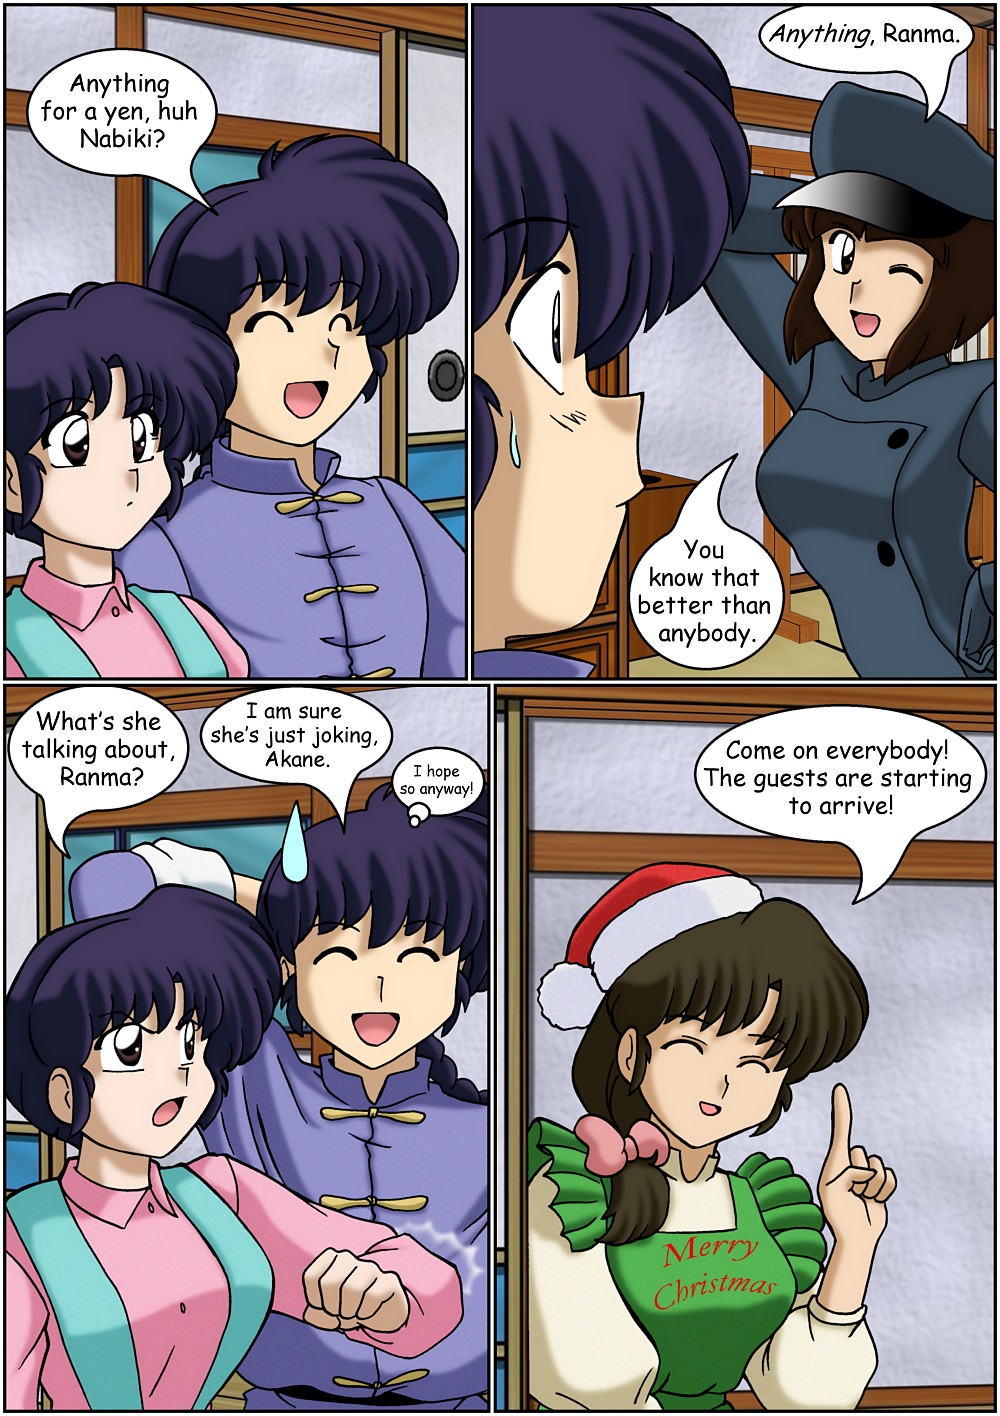 Ranma - Christmas Story